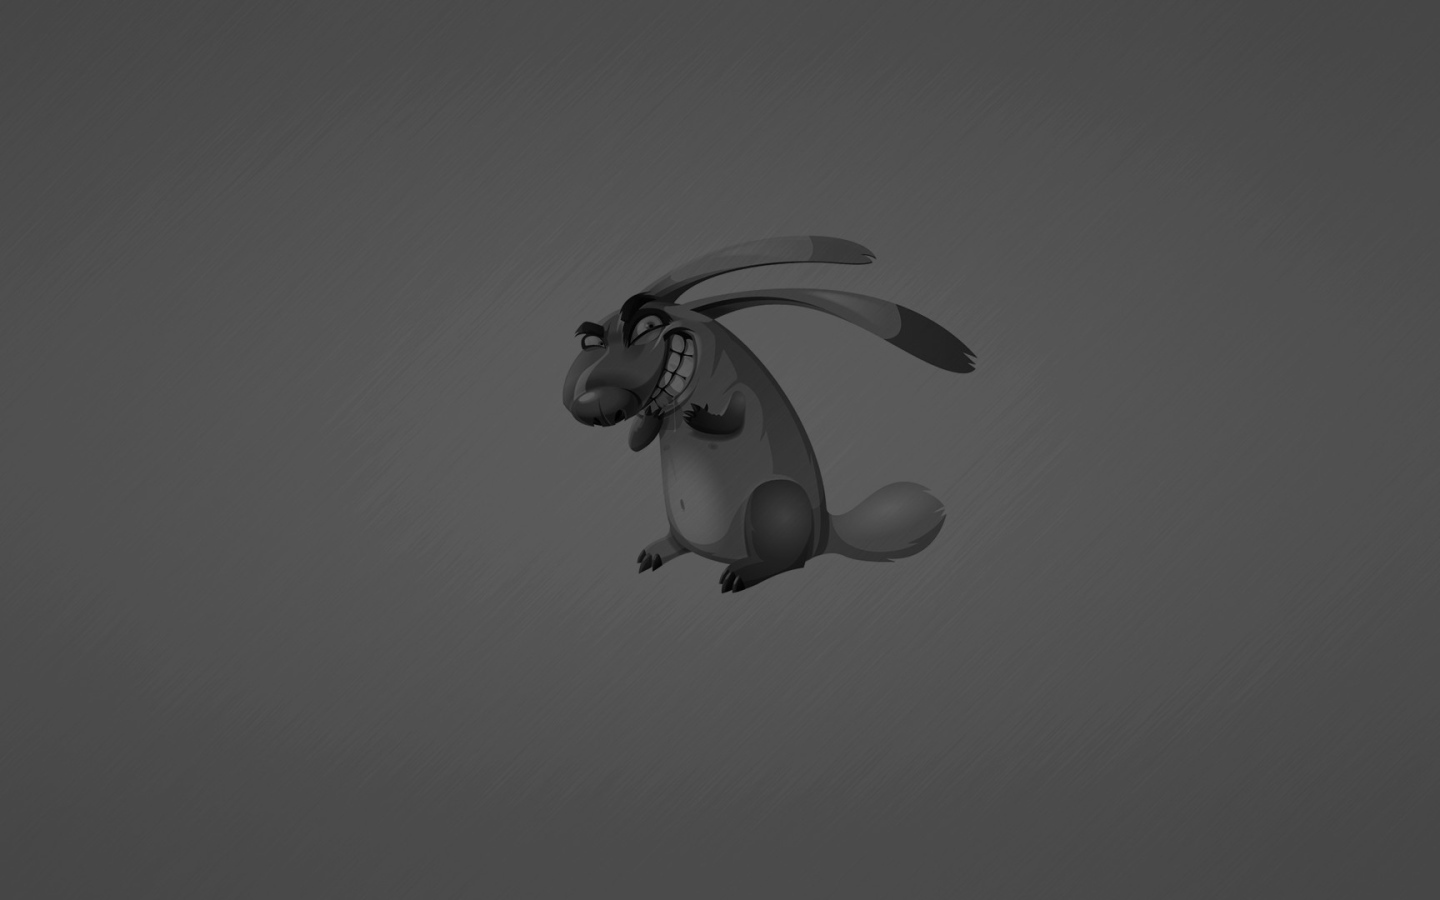 Angry bunny